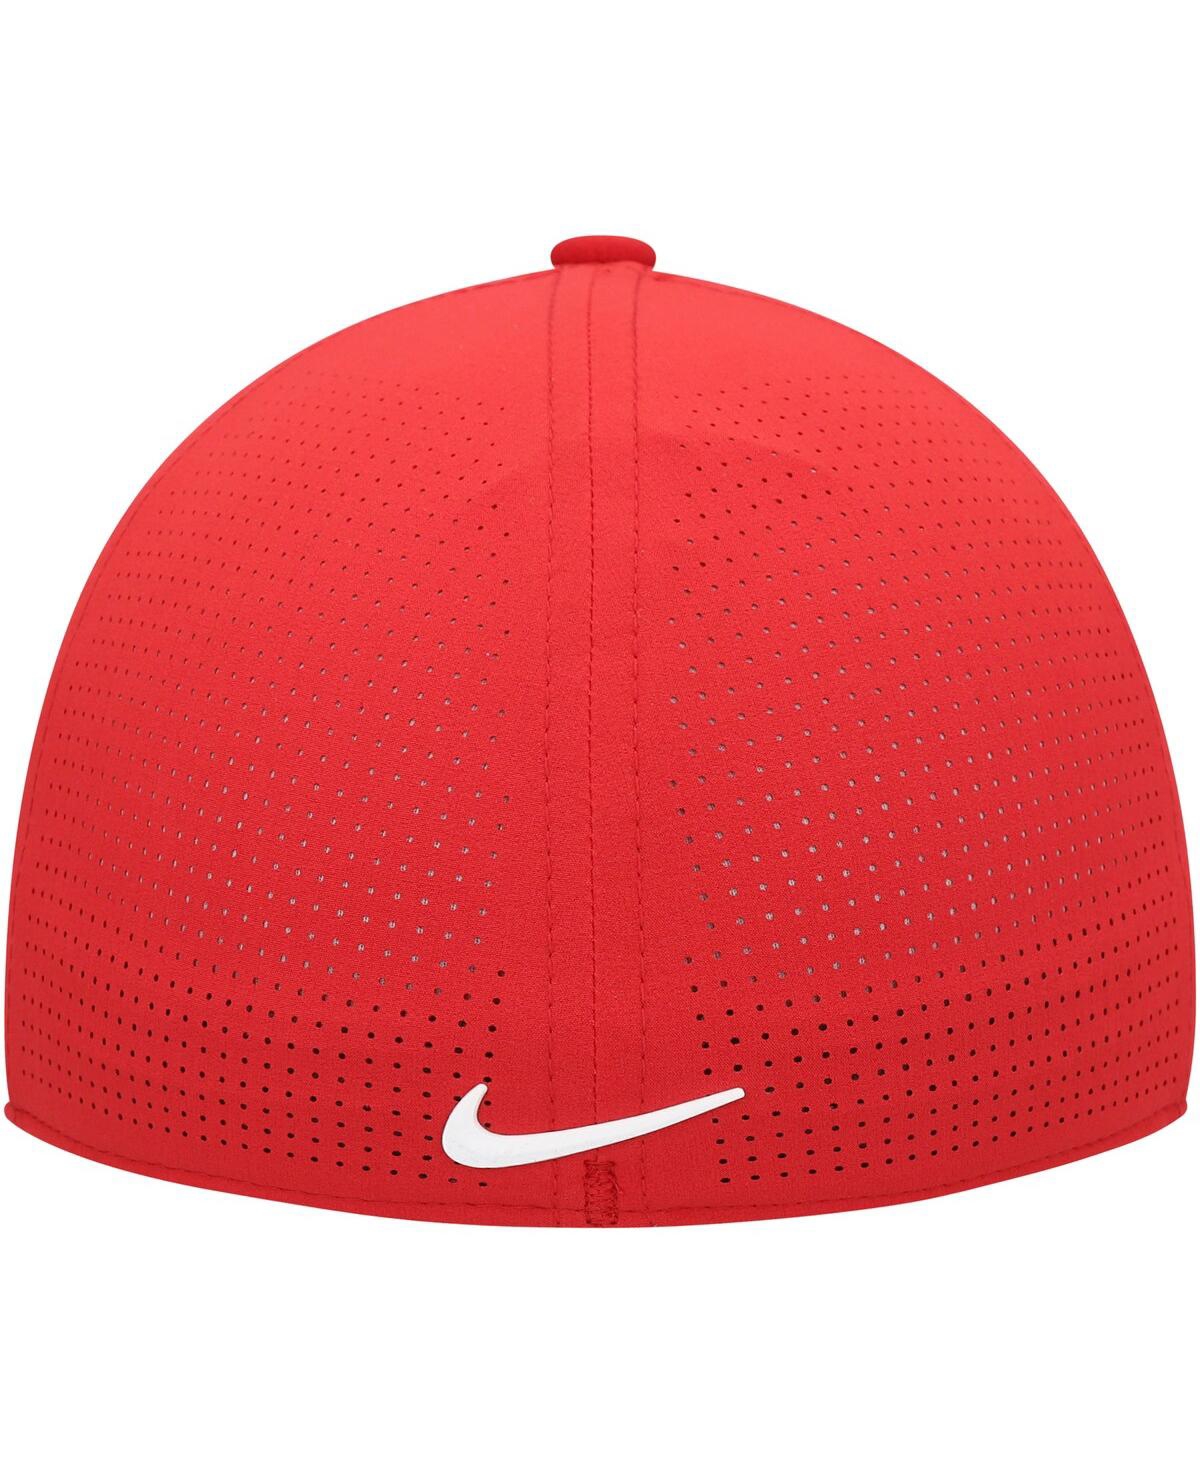 Shop Nike Men's  Golf Red Tiger Woods Heritage86 Performance Flex Hat